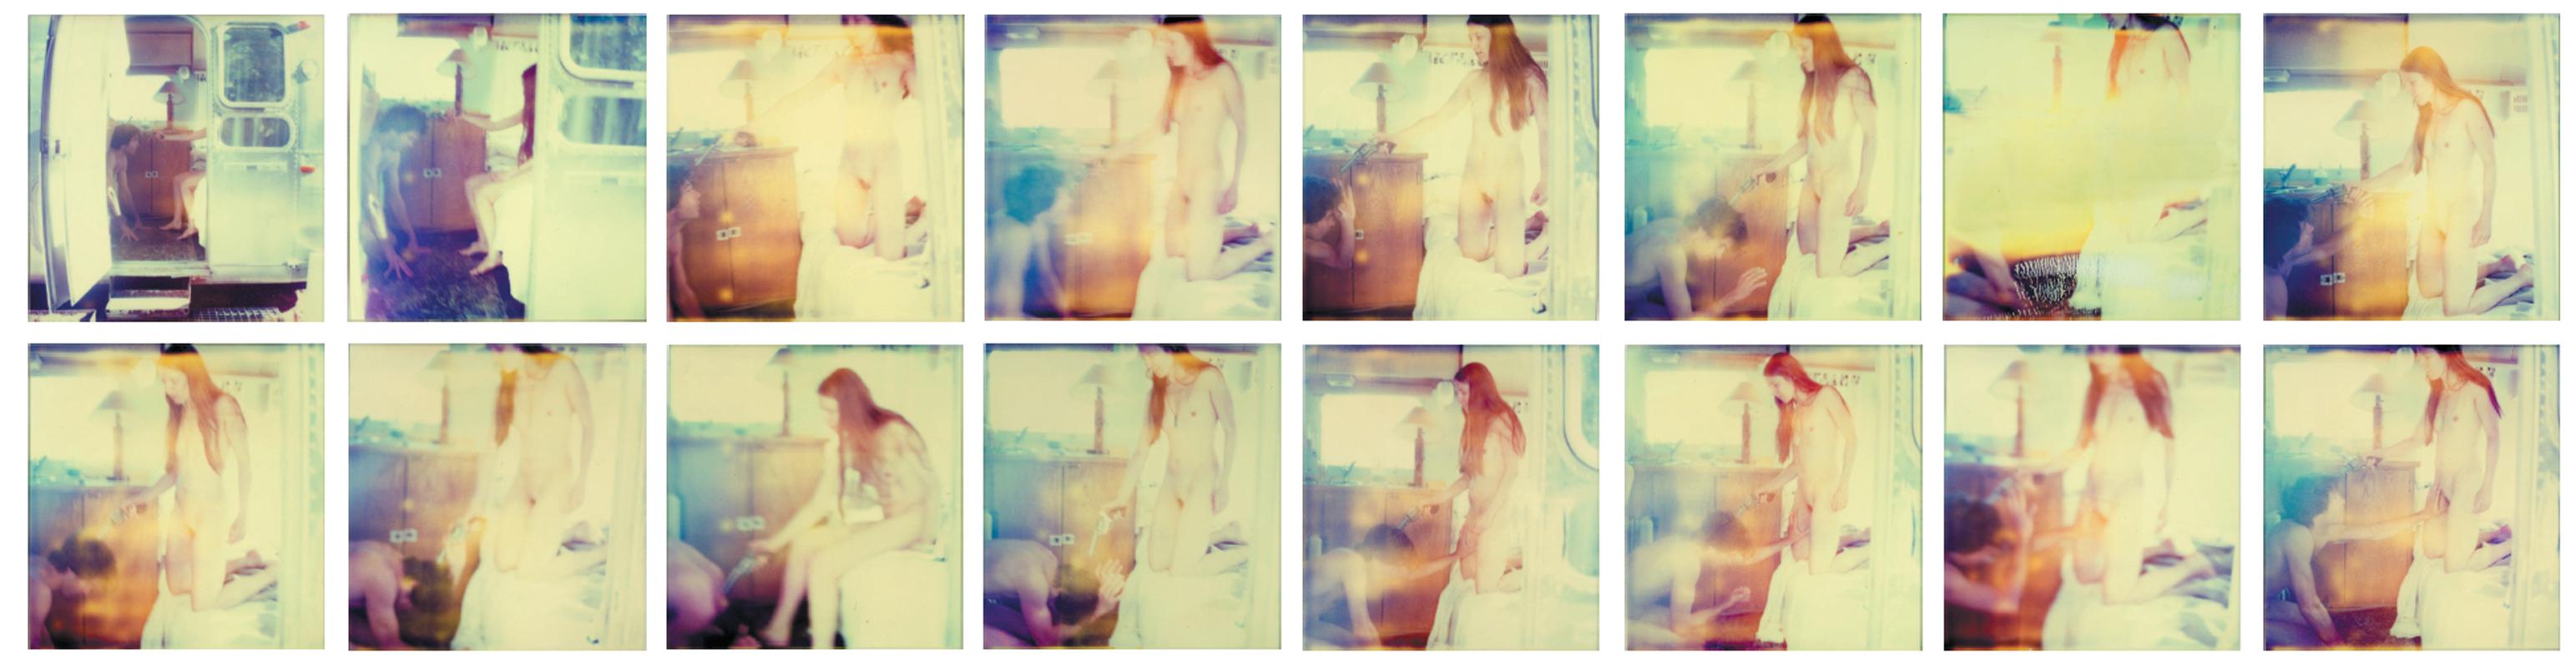 Stefanie Schneider Color Photograph - Bells Ringing (Sidewinder) - Polaroid, Contemporary, Man, Women, Love